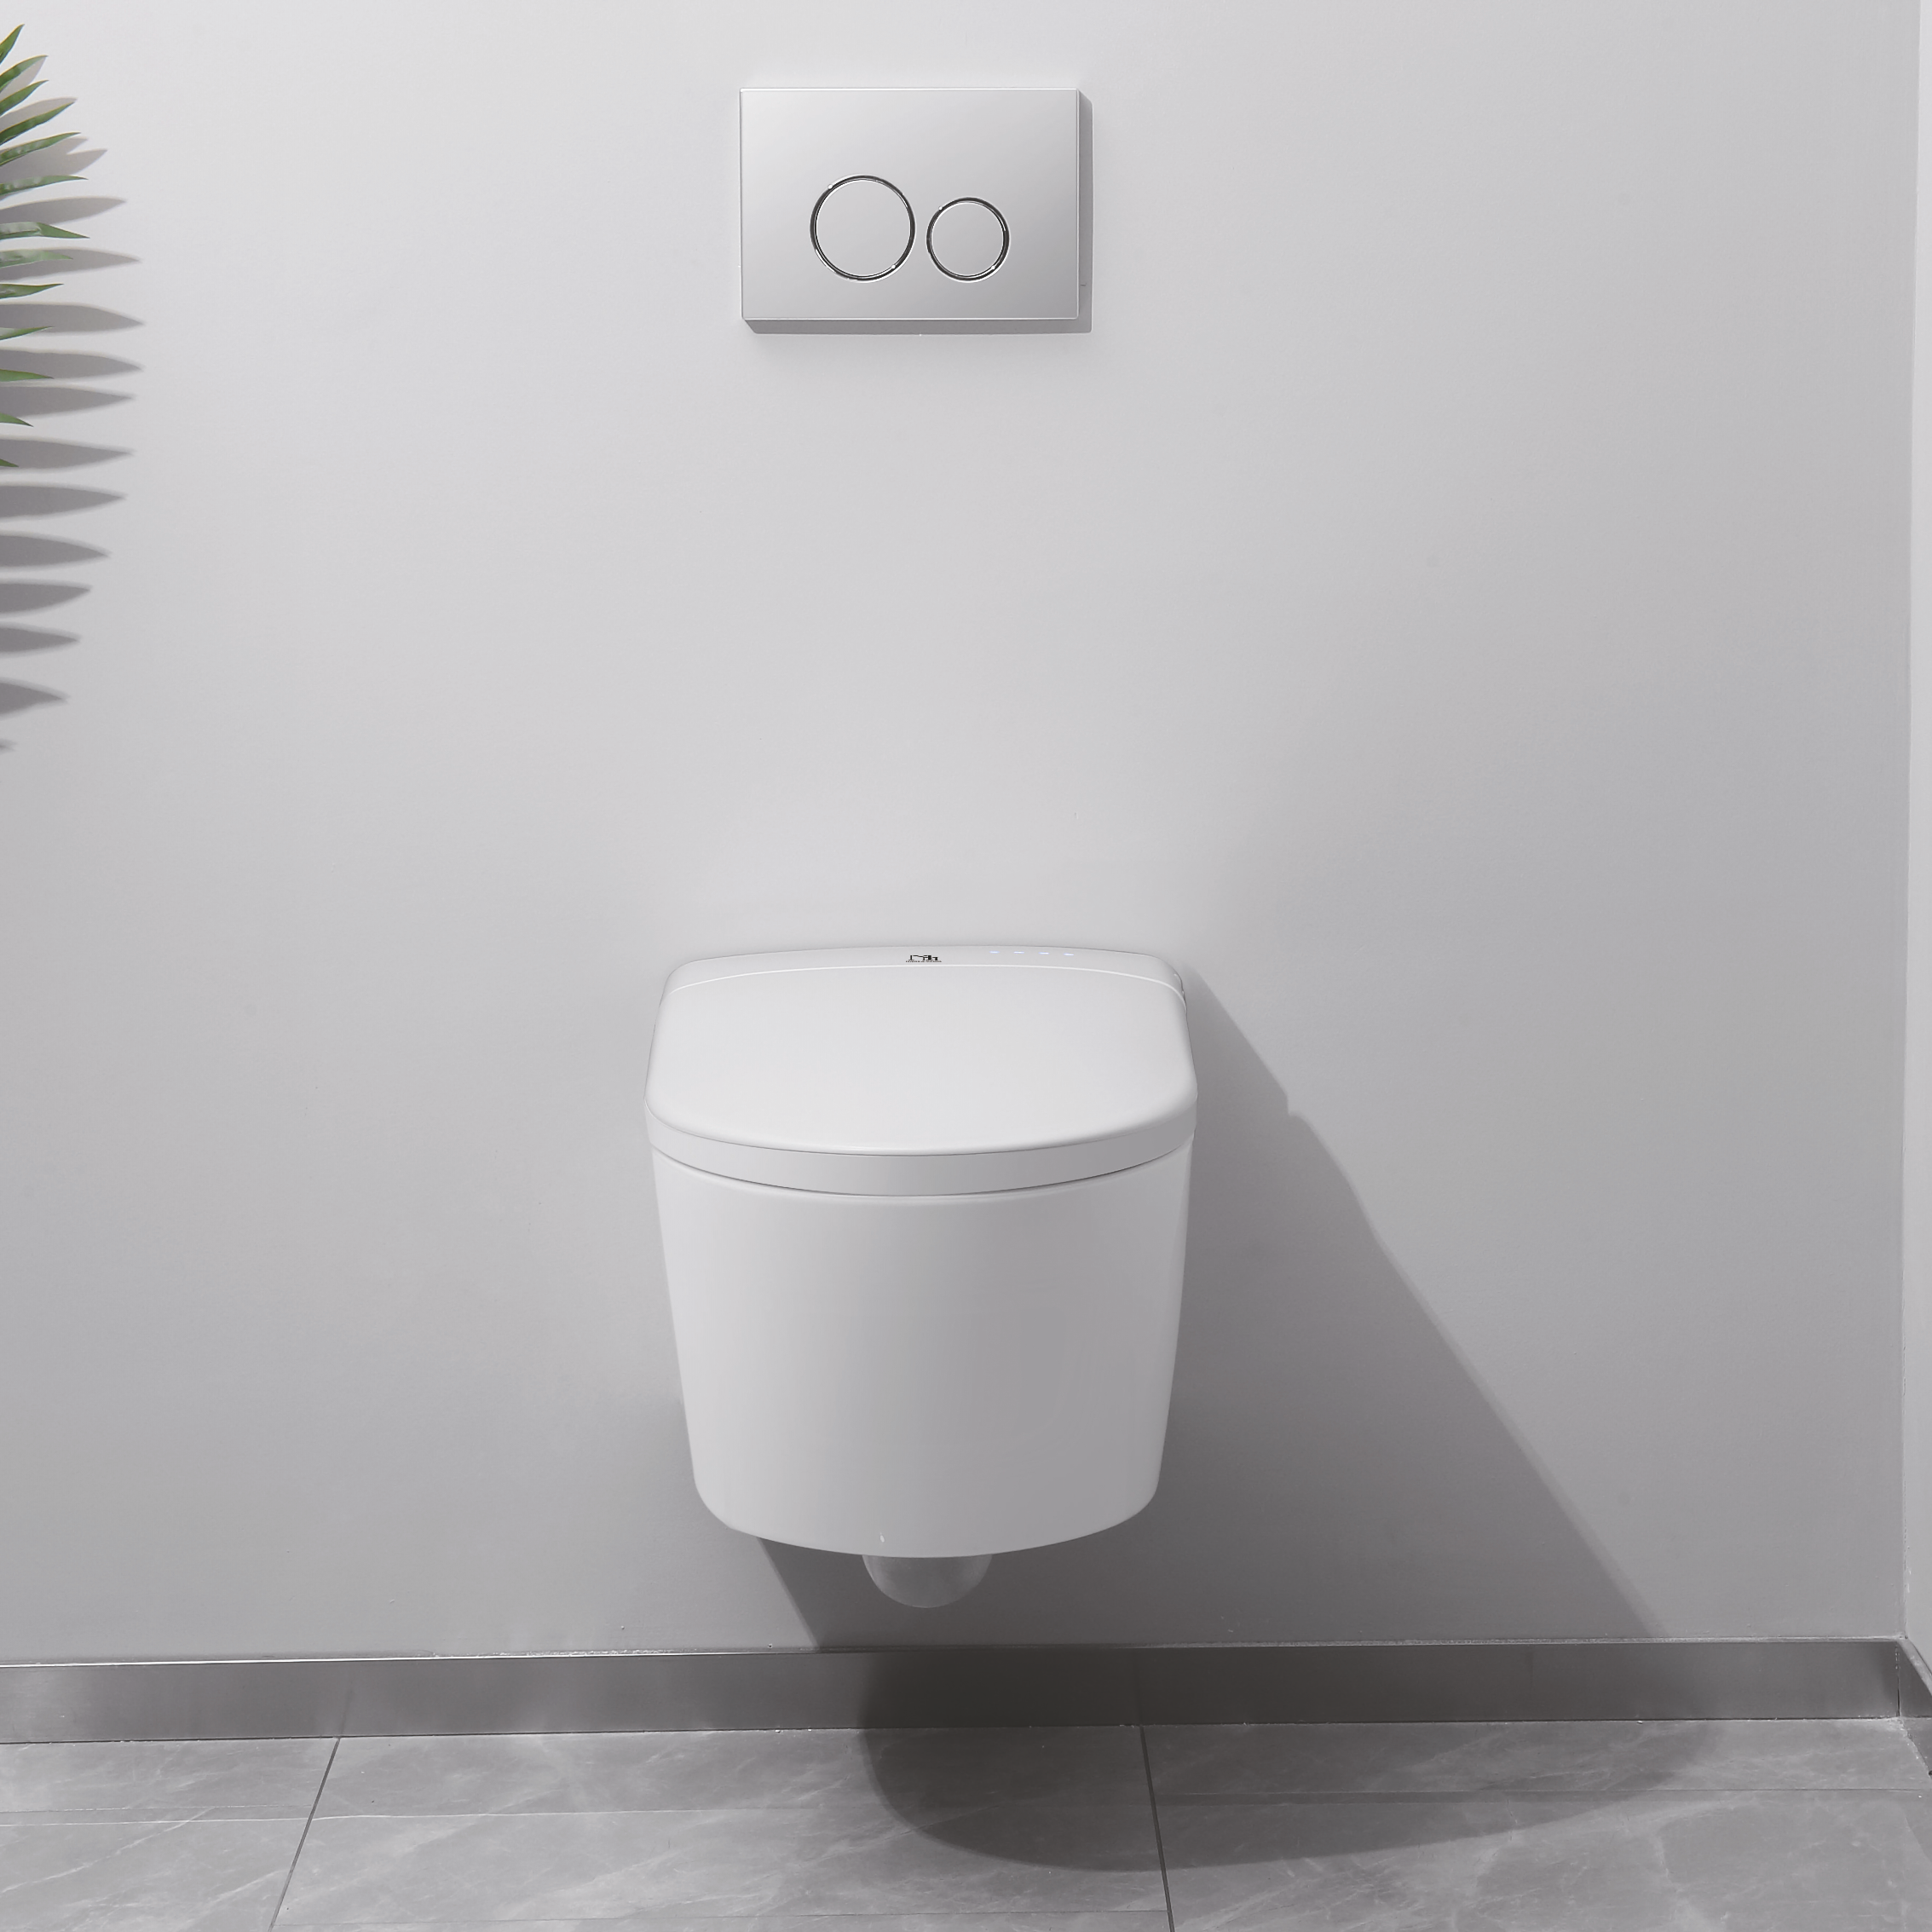 Toaleta Myjąca SUPERIOR wersja podwieszana, elektroniczny bidet i podgrzewana toaleta Major&Maker